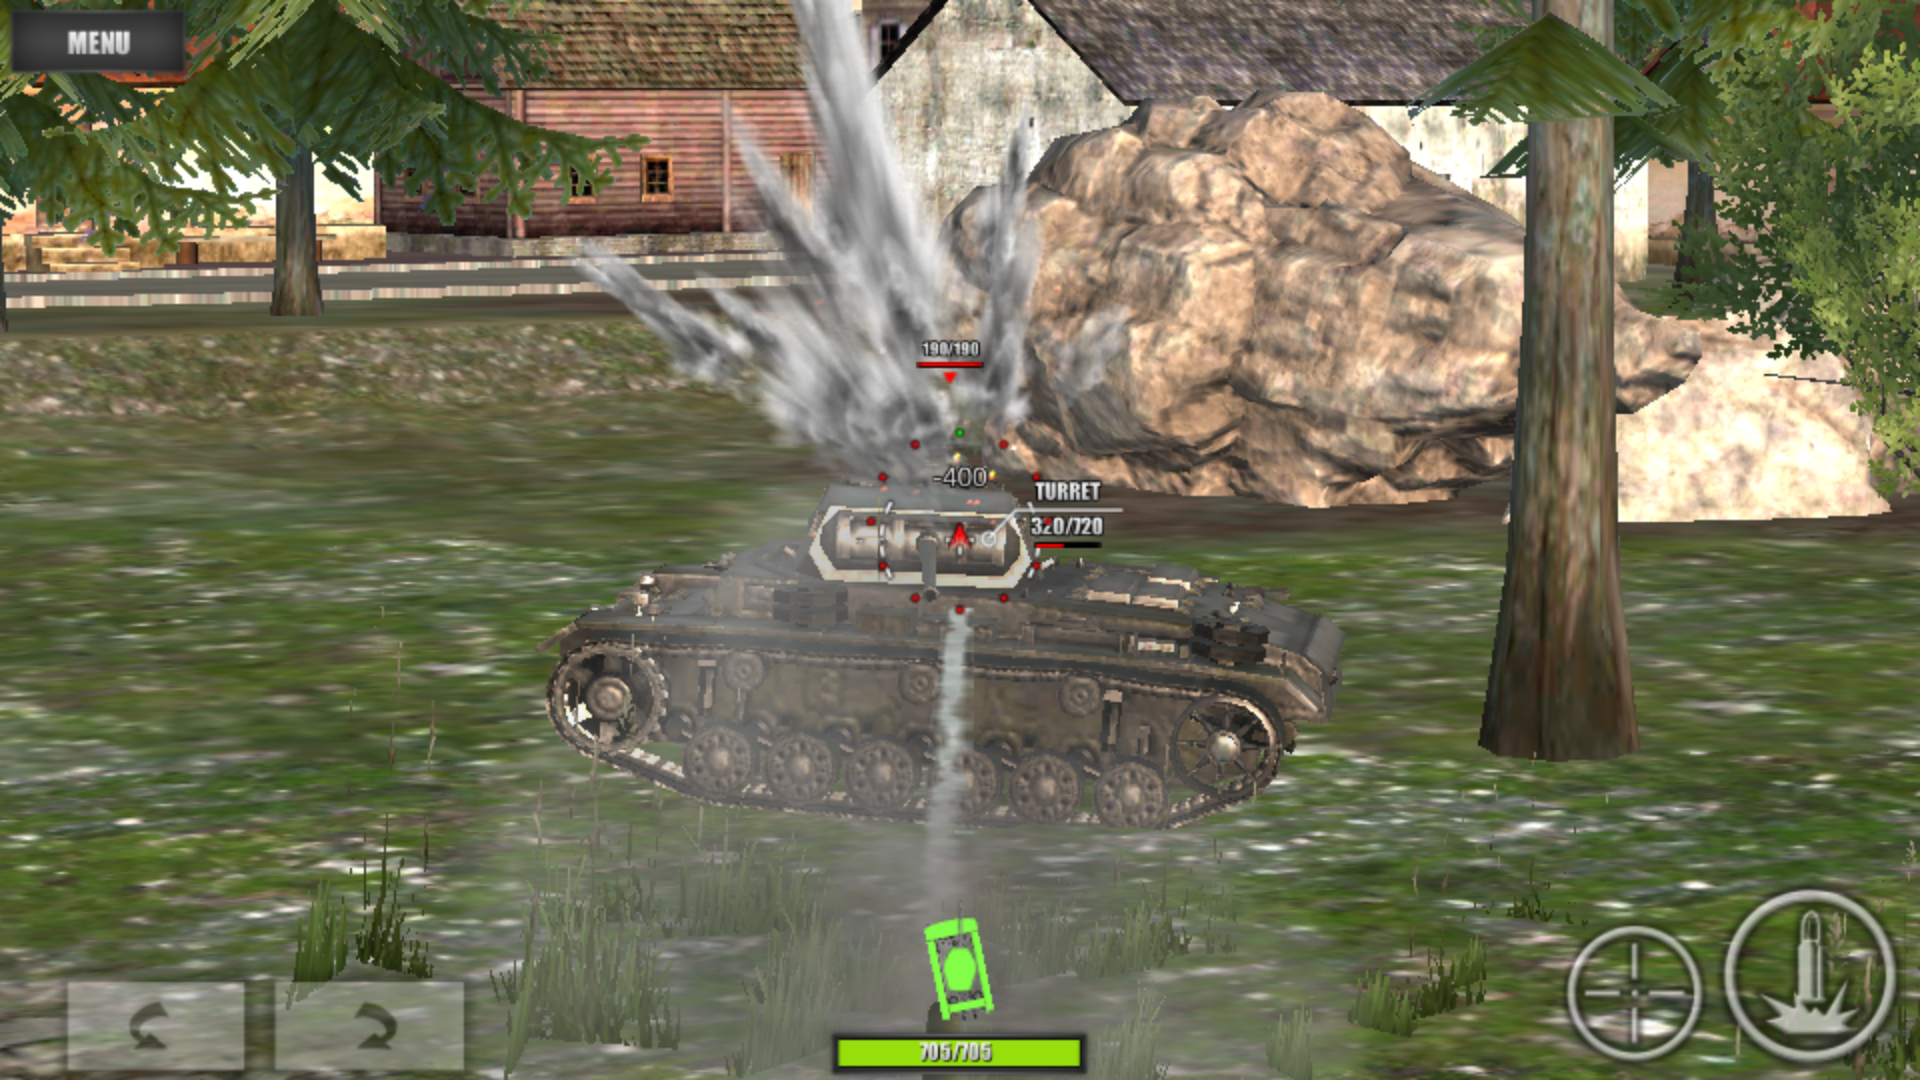 world of steel : tank force mod